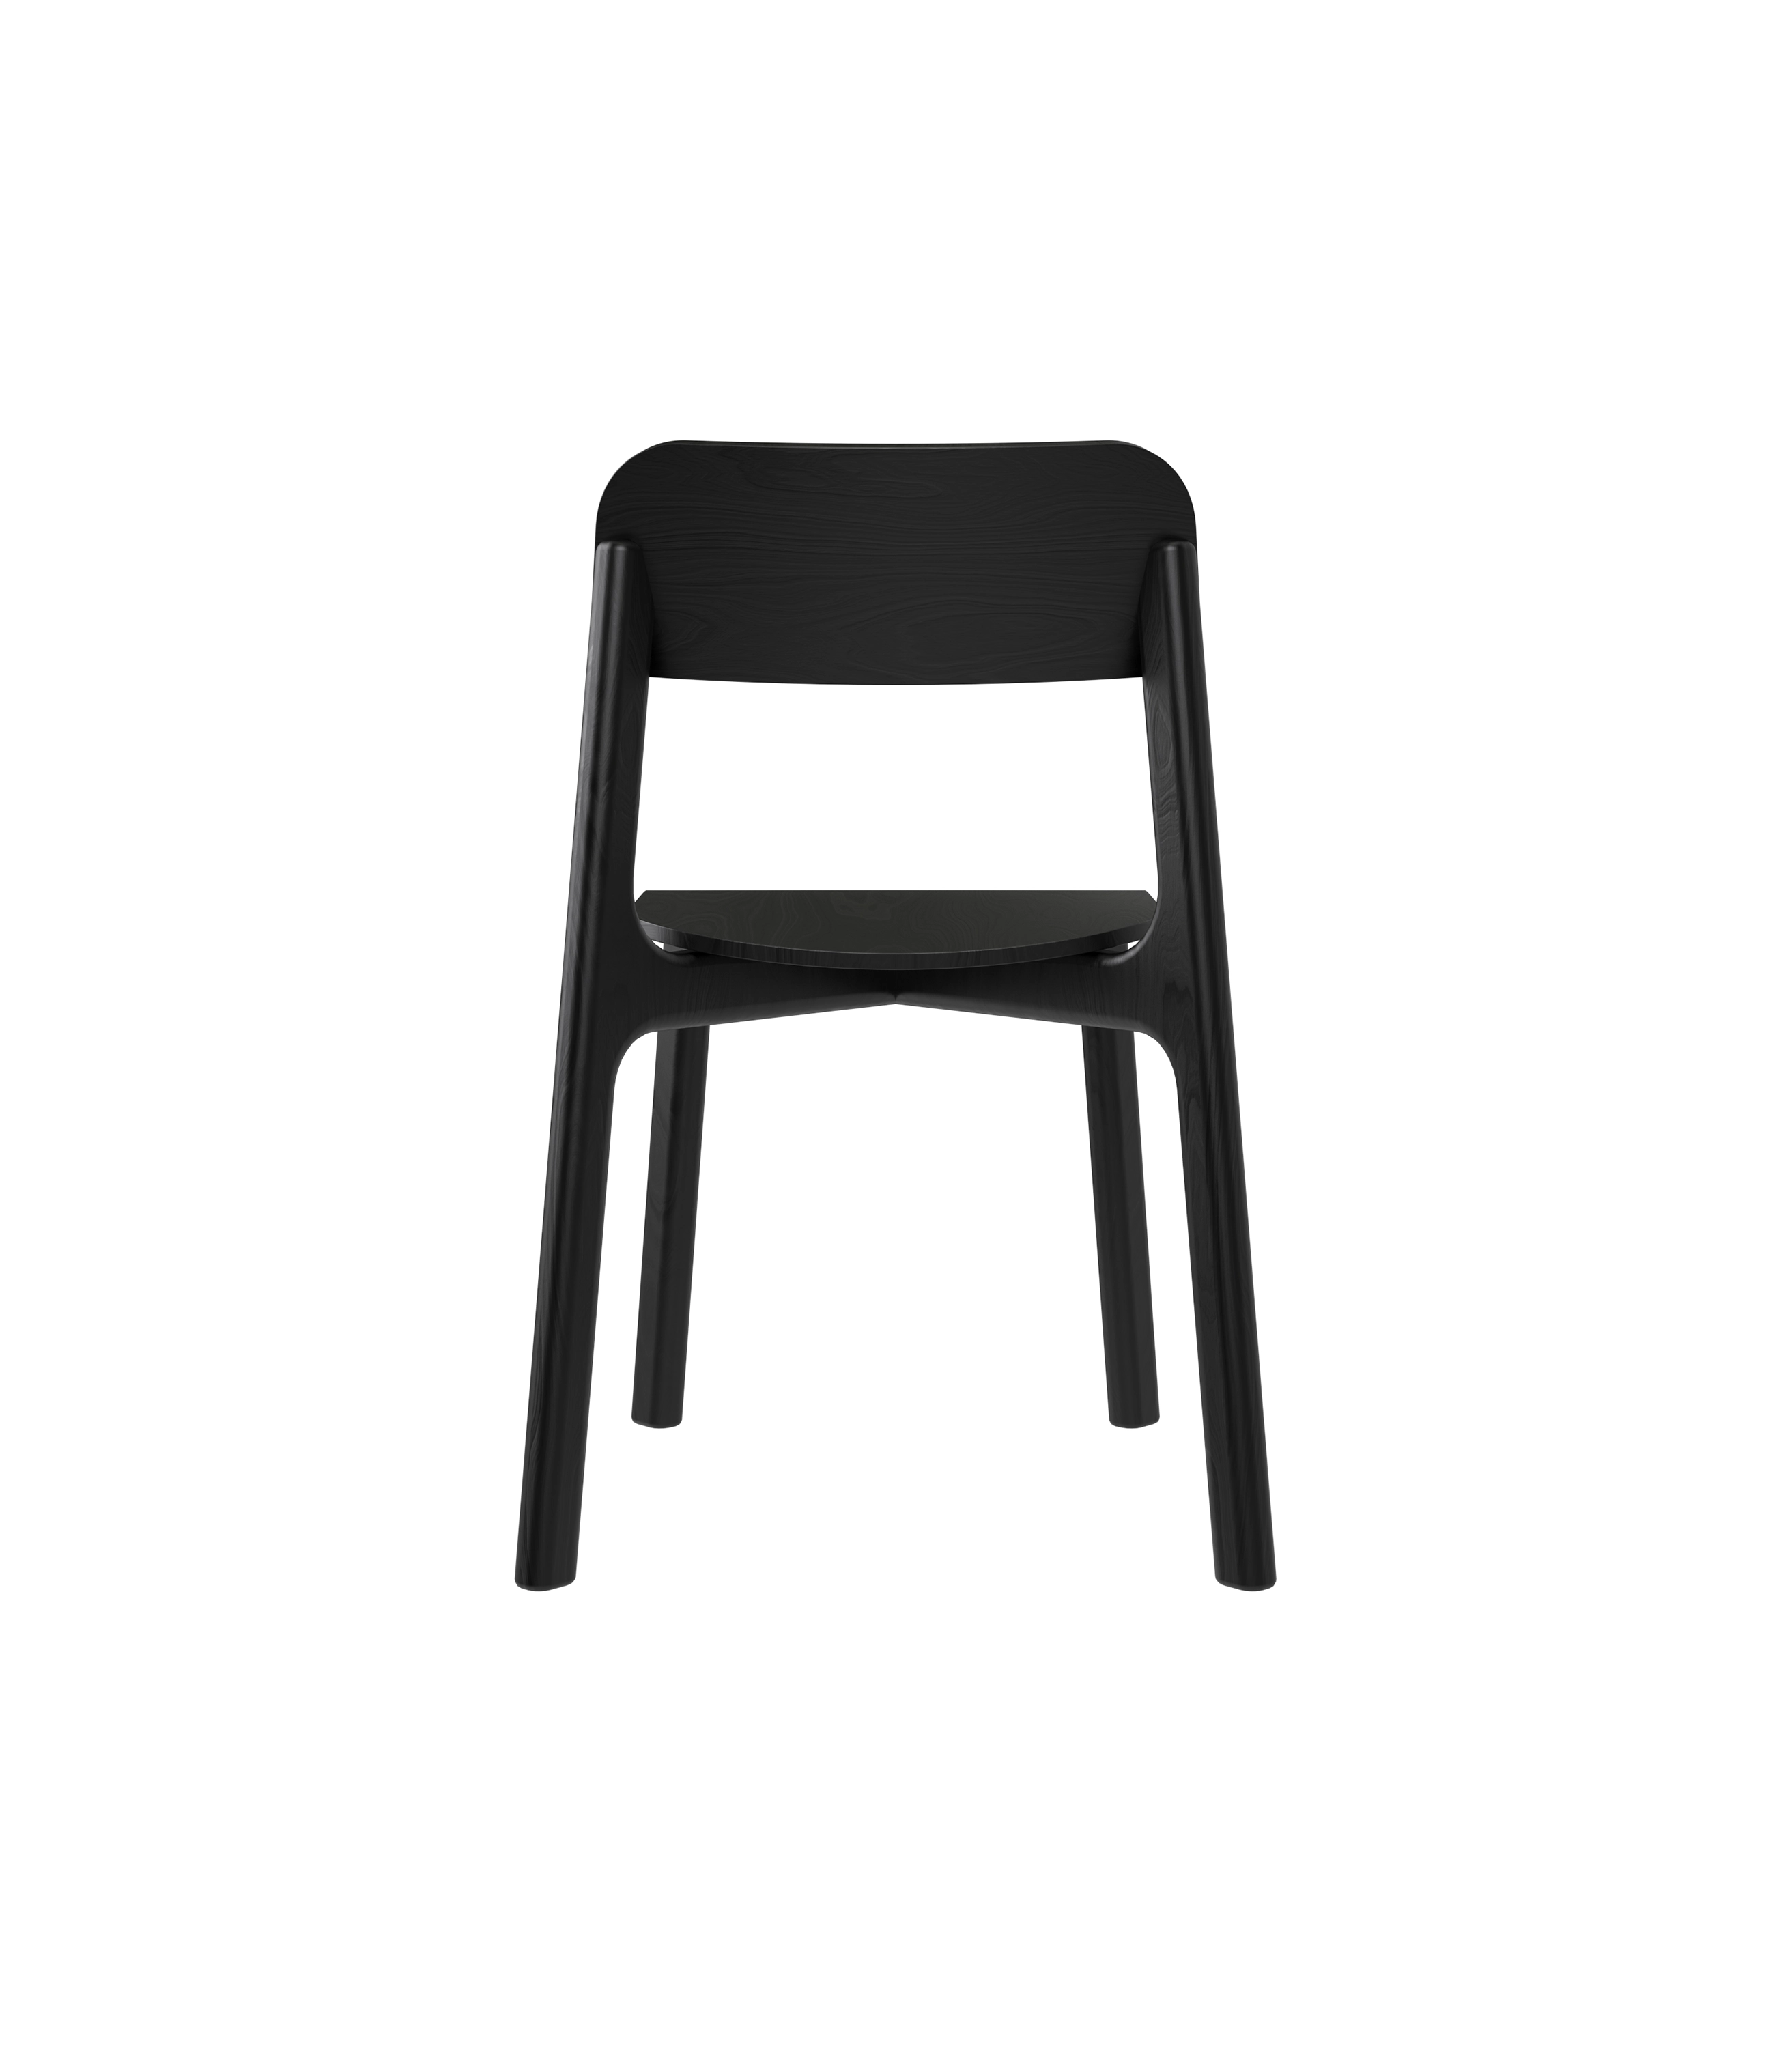 krzesło czarne drewniane nowoczesne polski design